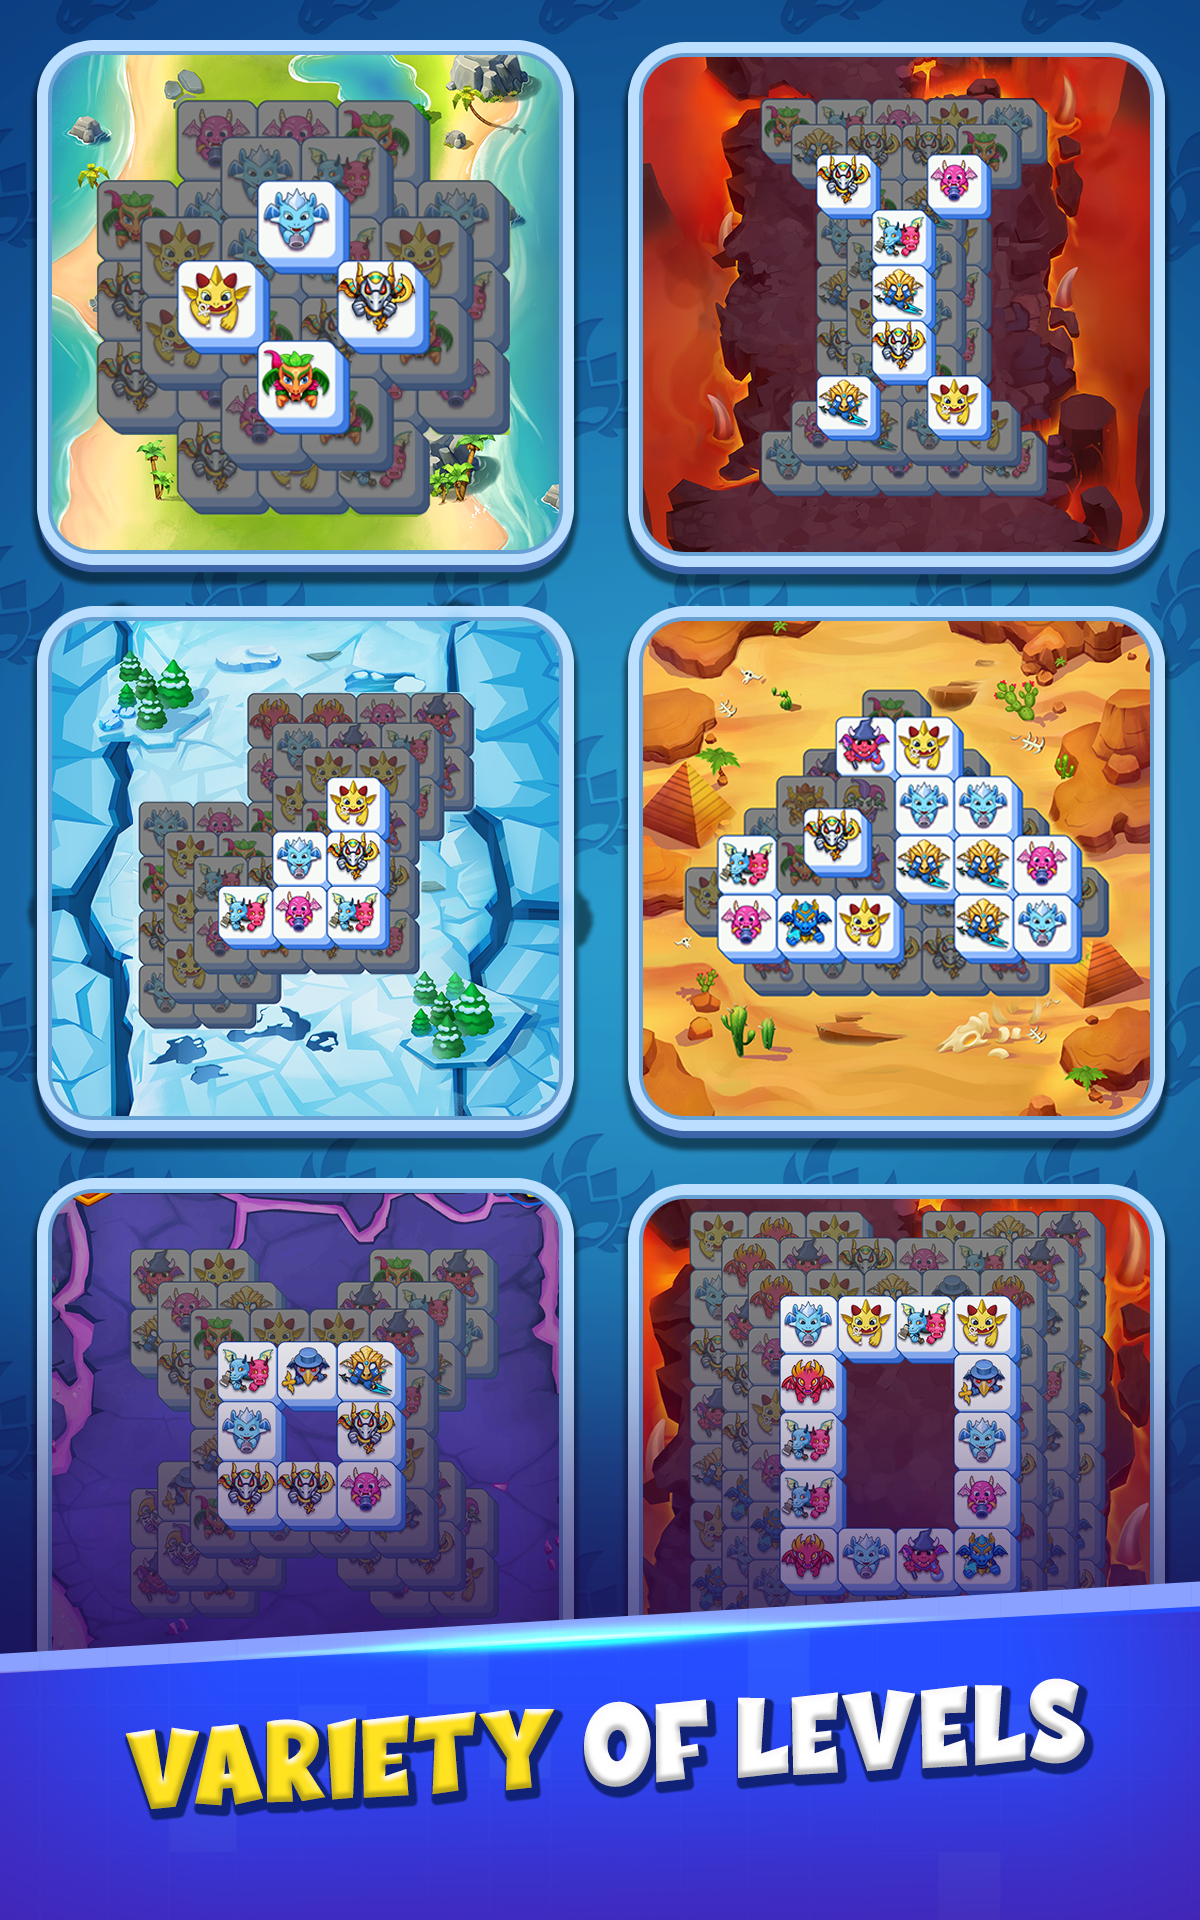 Puzzle Dragons : Tile Match 게임 스크린 샷